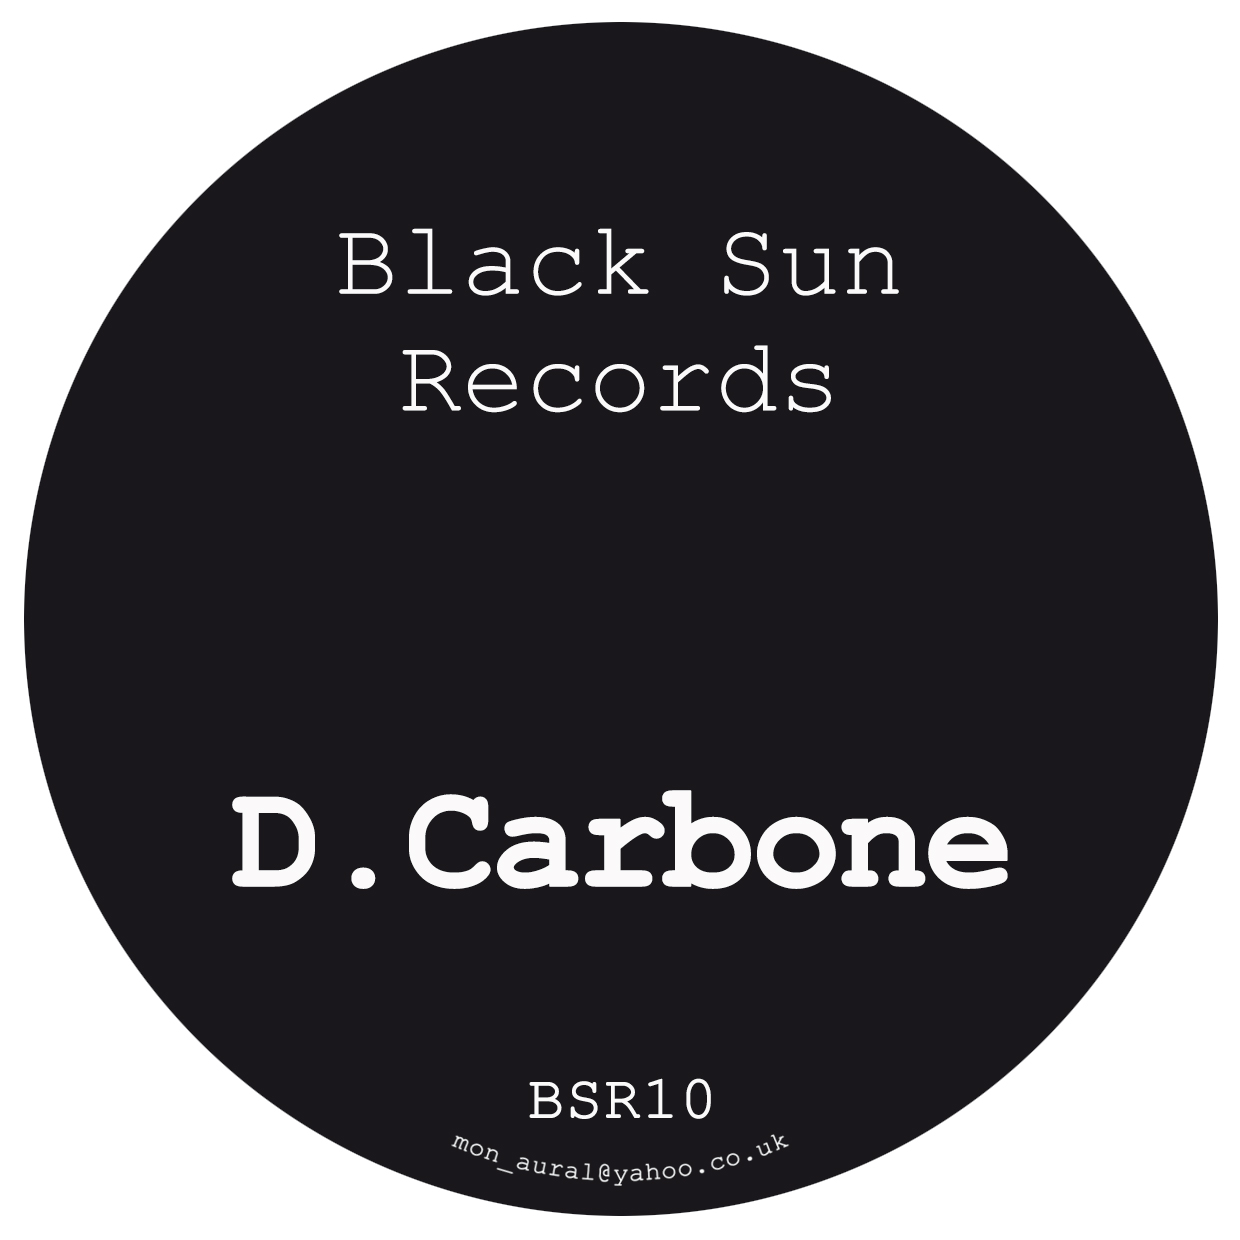 Jo feat. Carbone. Перевод Black Sun. Eli_Sun's записи. Товары Black Sun.